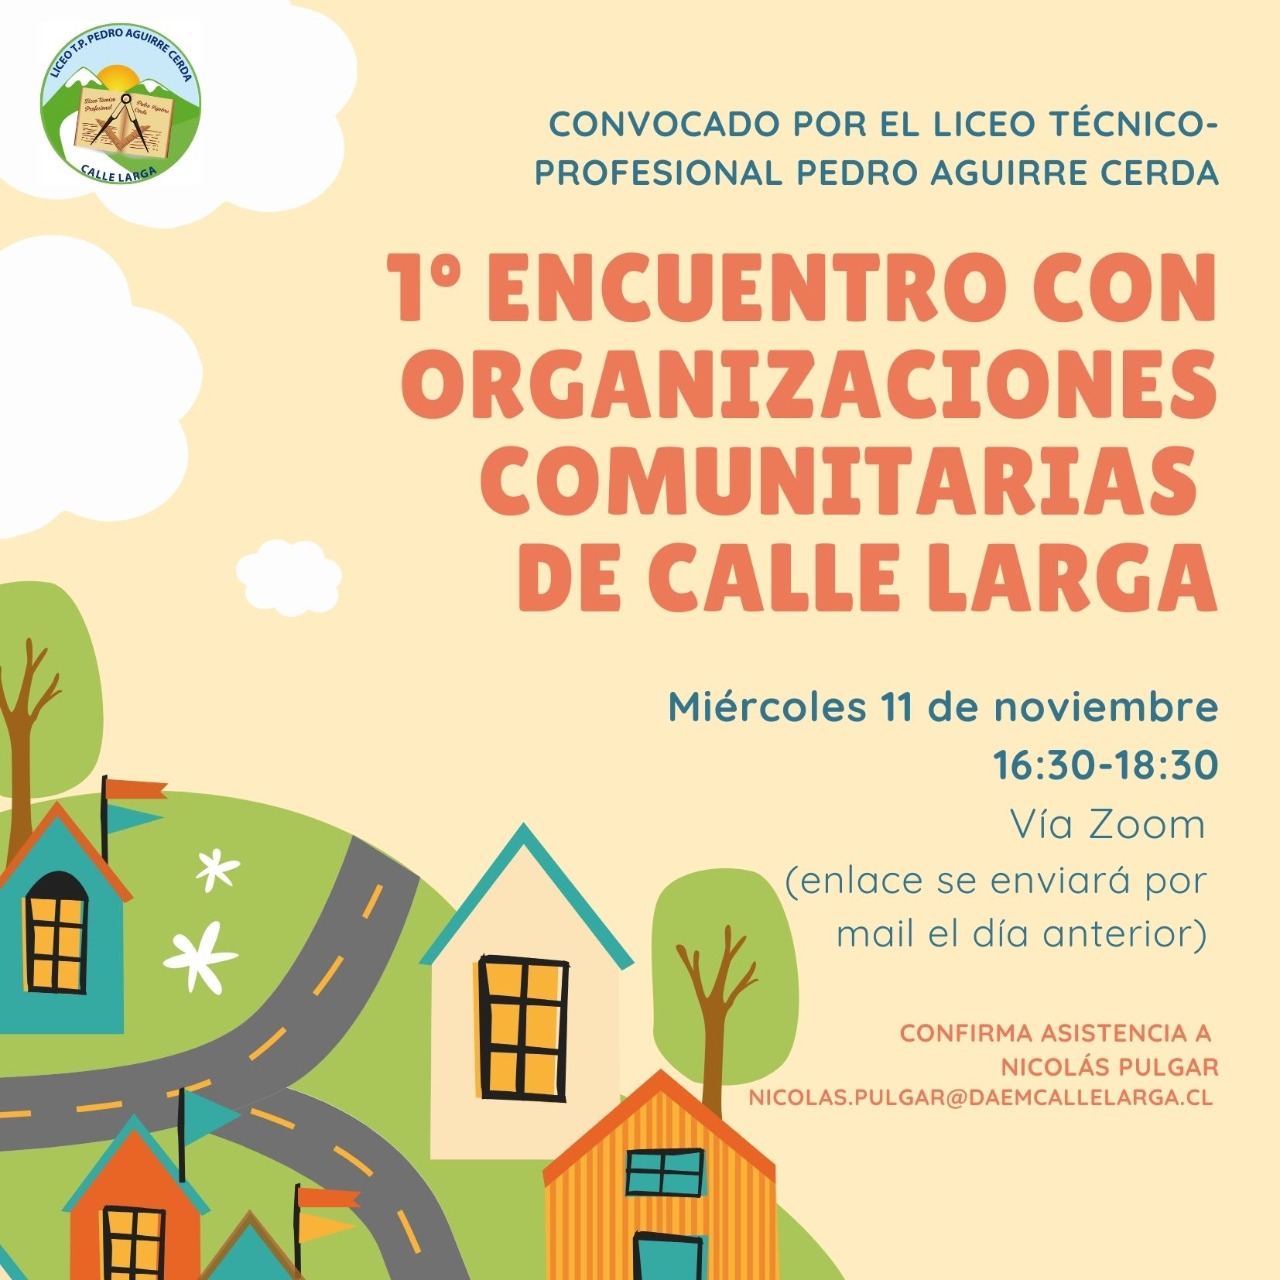 CALLE LARGA: Liceo Técnico Profesional Pedro Aguirre Cerda convoca al Primer Encuentro de Organizaciones Comunitarias